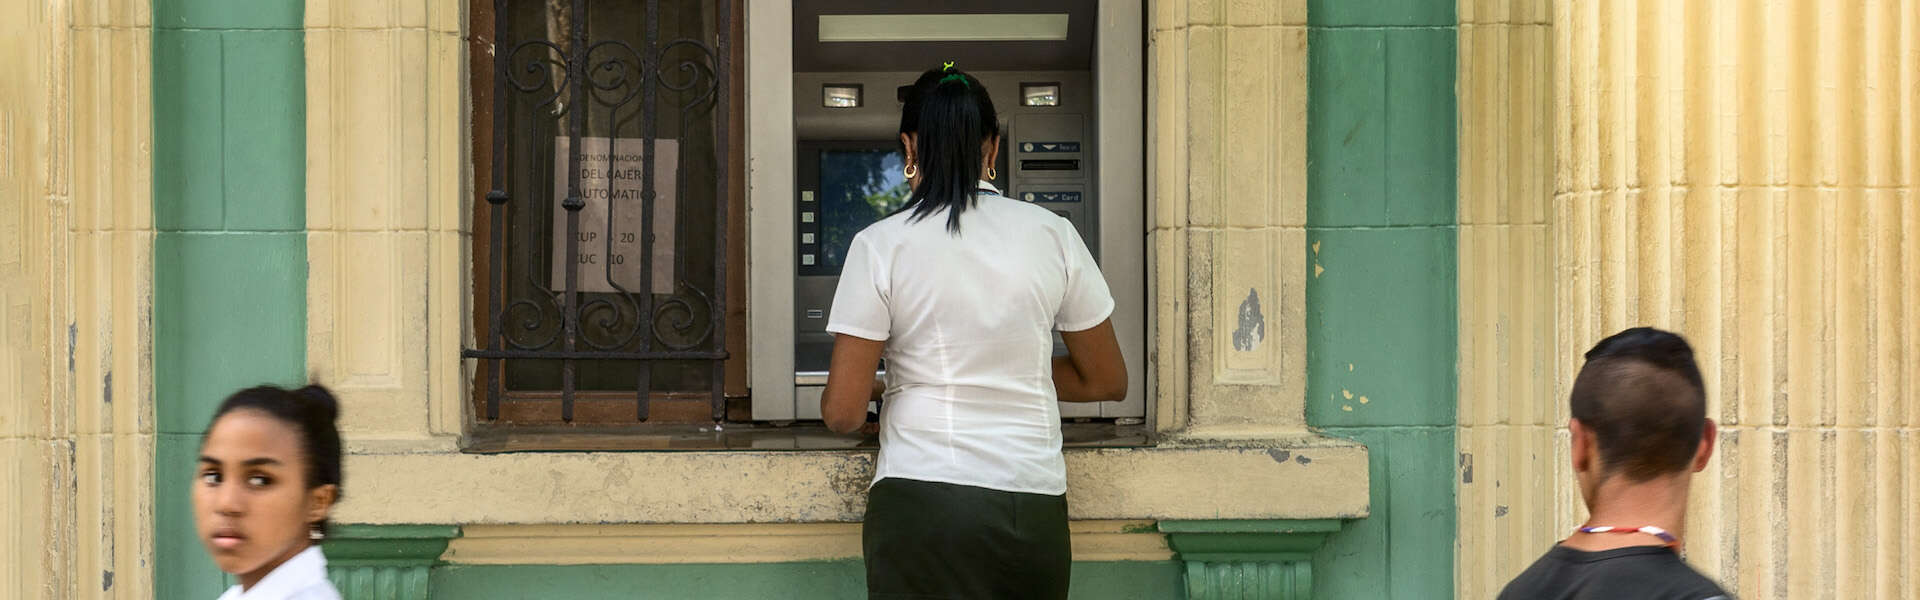 Woman using ATM in Cuba